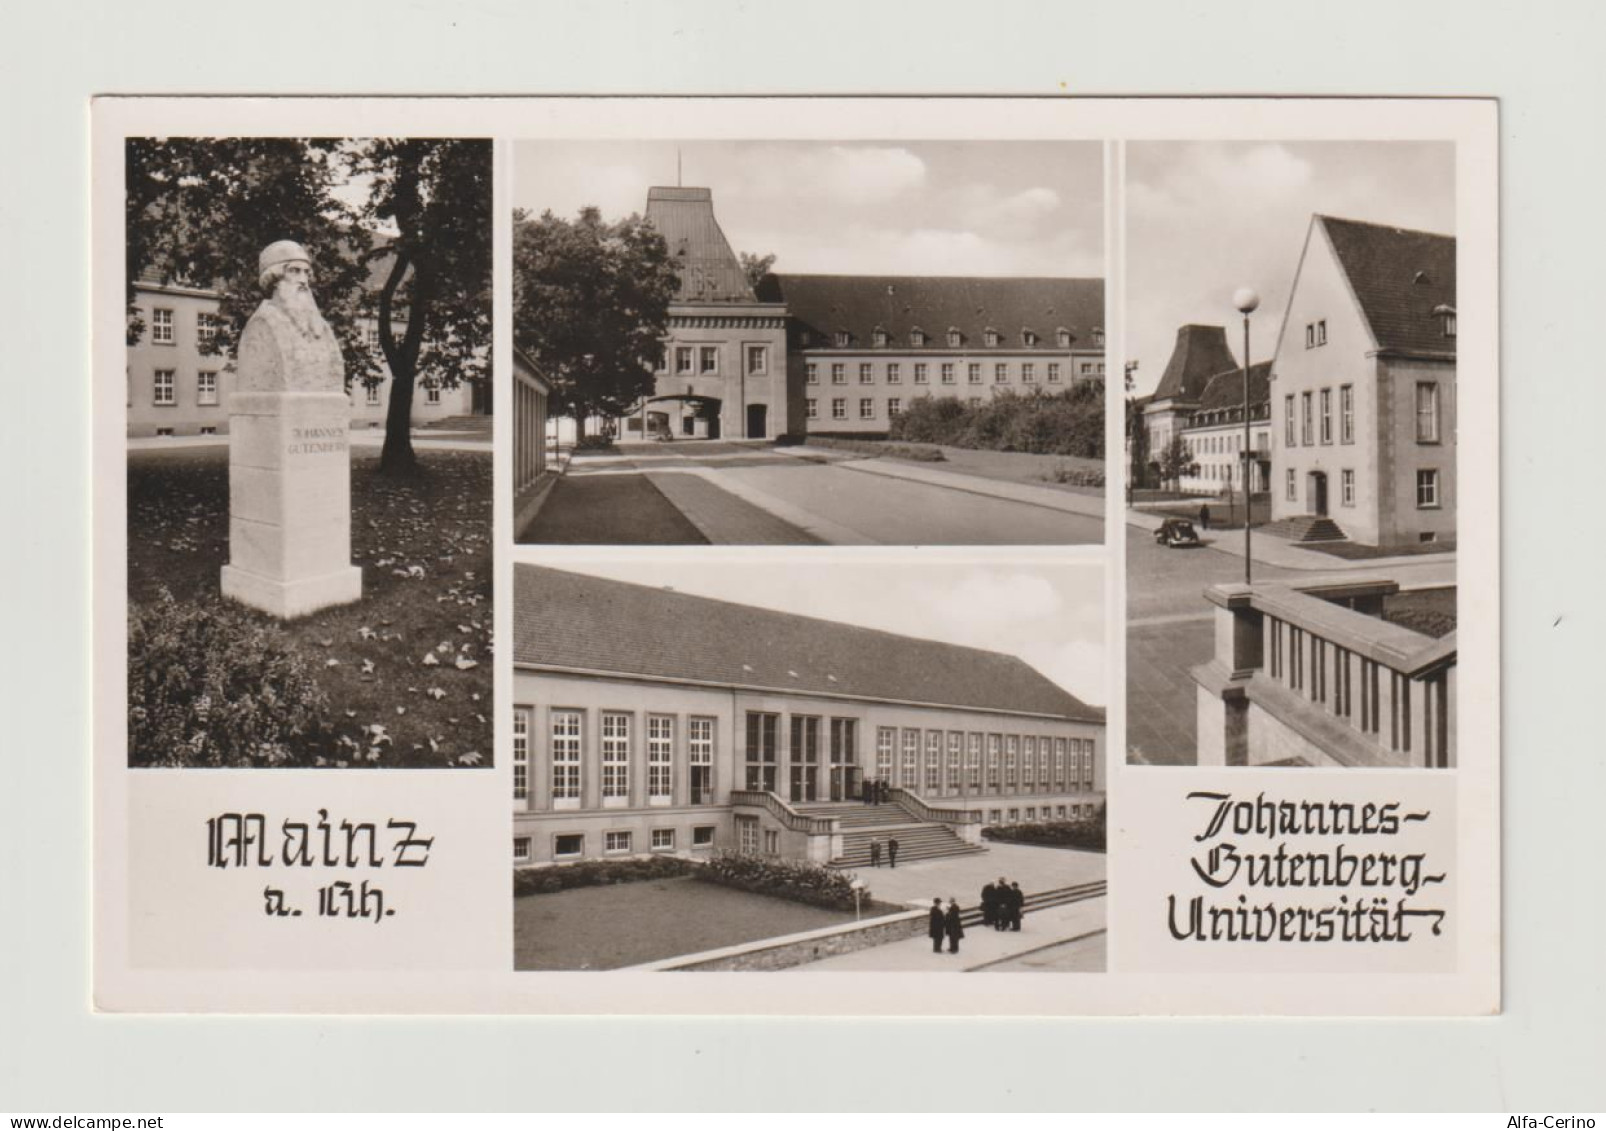 MAINZ  AM  RHEIN:  JOHANNES  BUTENBERG  UNIVERSITAT  -  BILDER  -  PHOTO  -  KLEINFORMAT - Schools